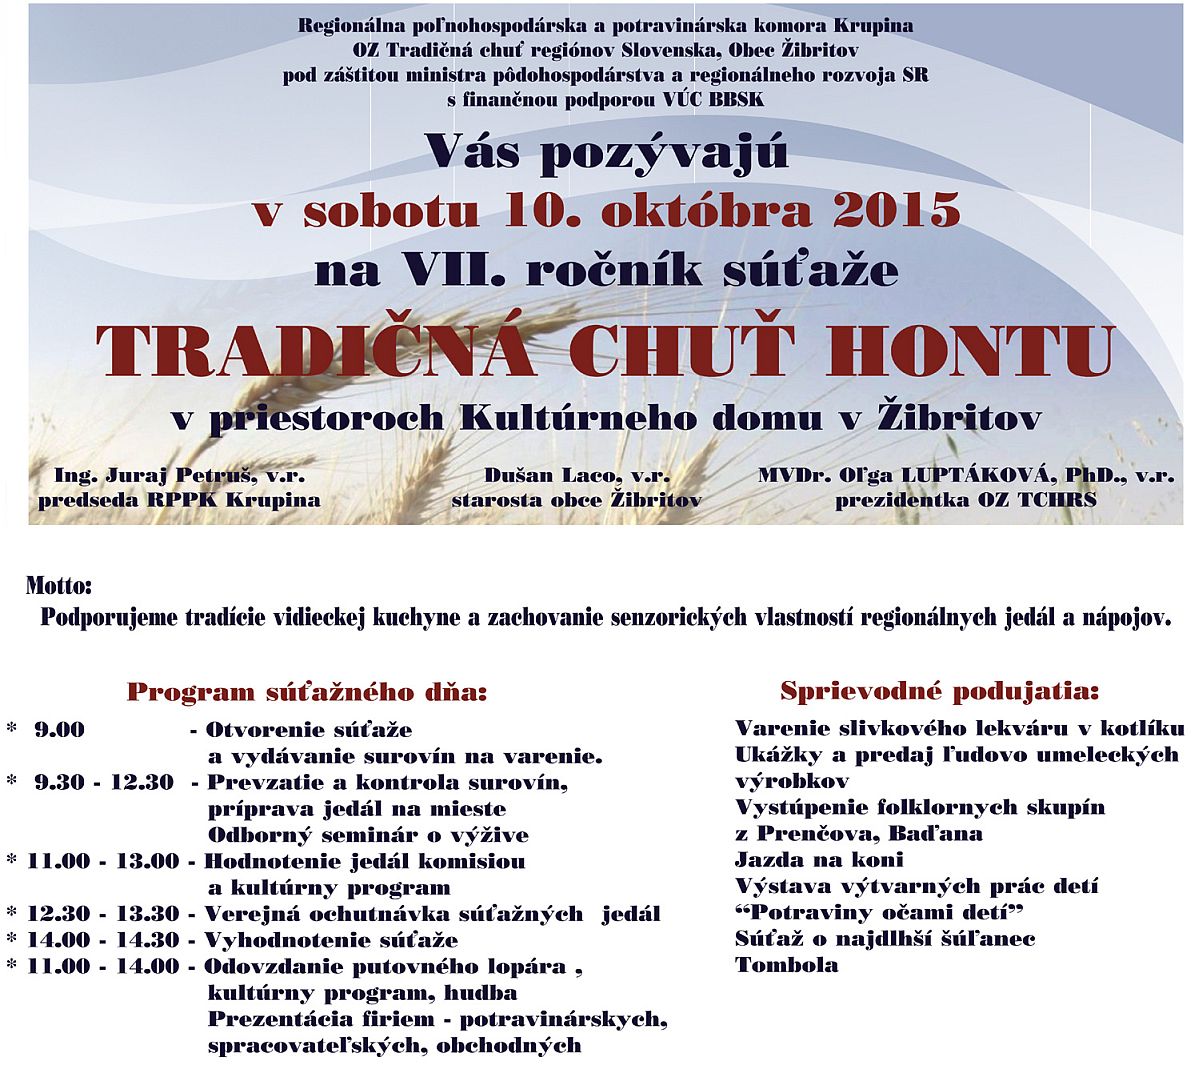 Tradin chu Hontu 2015 - 8. ronk 